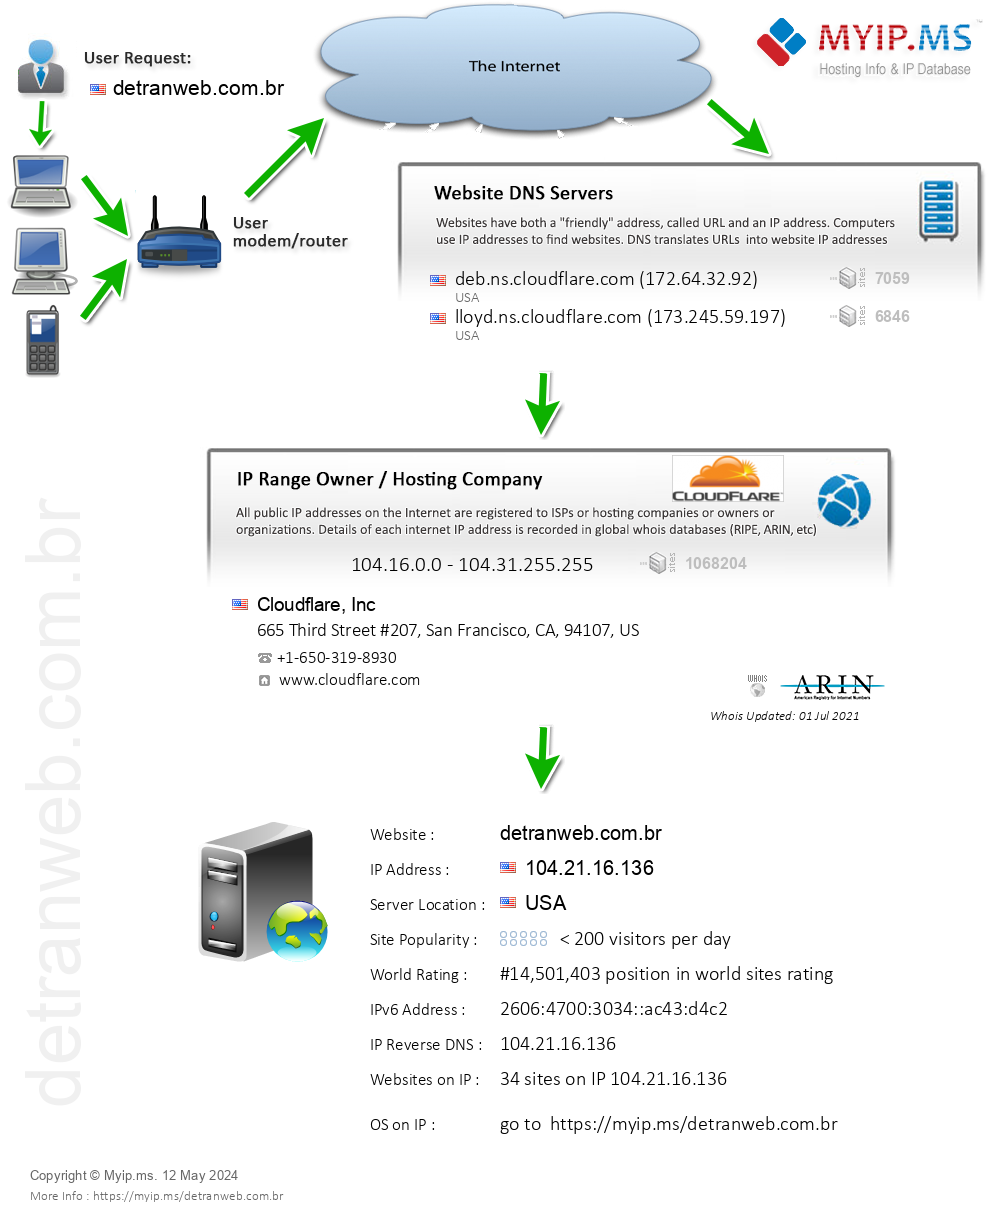 Detranweb.com.br - Website Hosting Visual IP Diagram